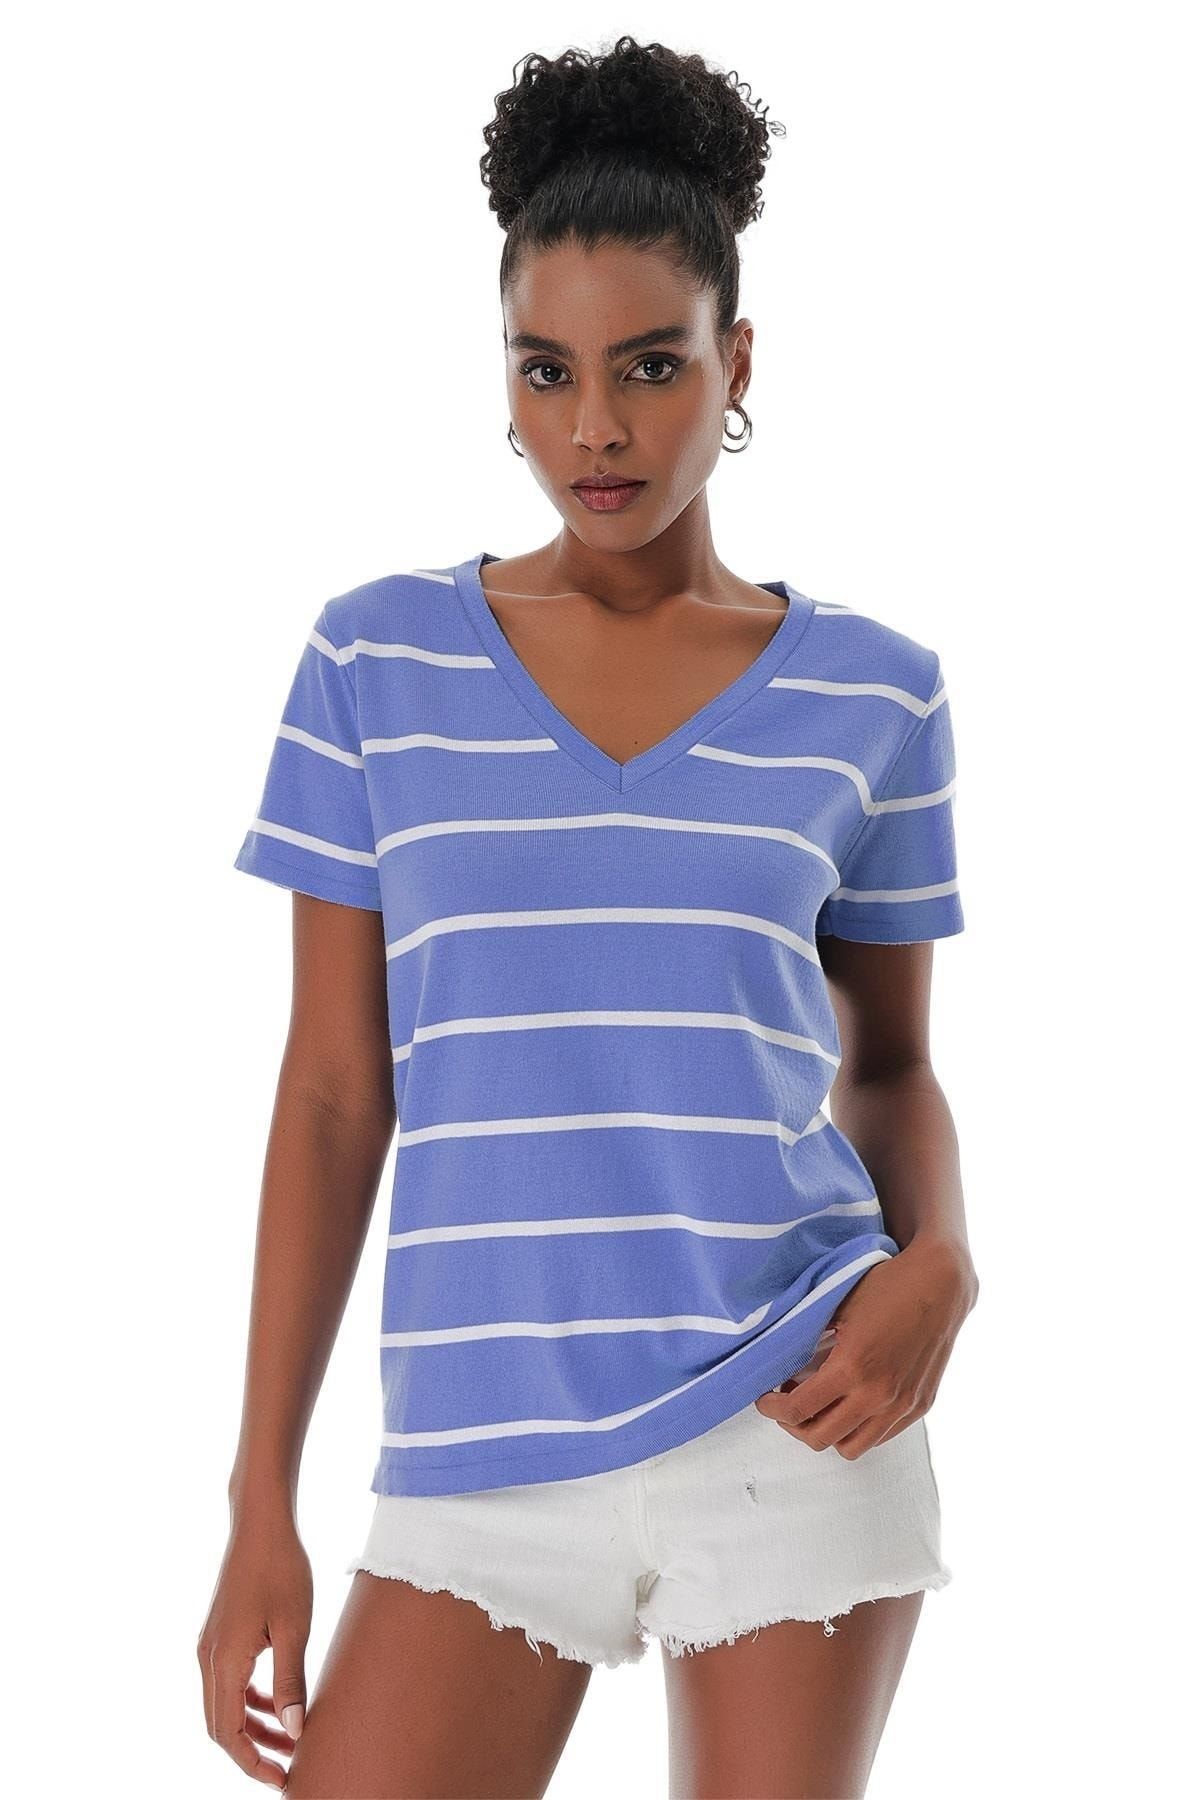 CHUBA Kadın V Yaka Ince Çizgili Pamuklu Marin Triko T-shirt Mavi-beyaz 23s1007